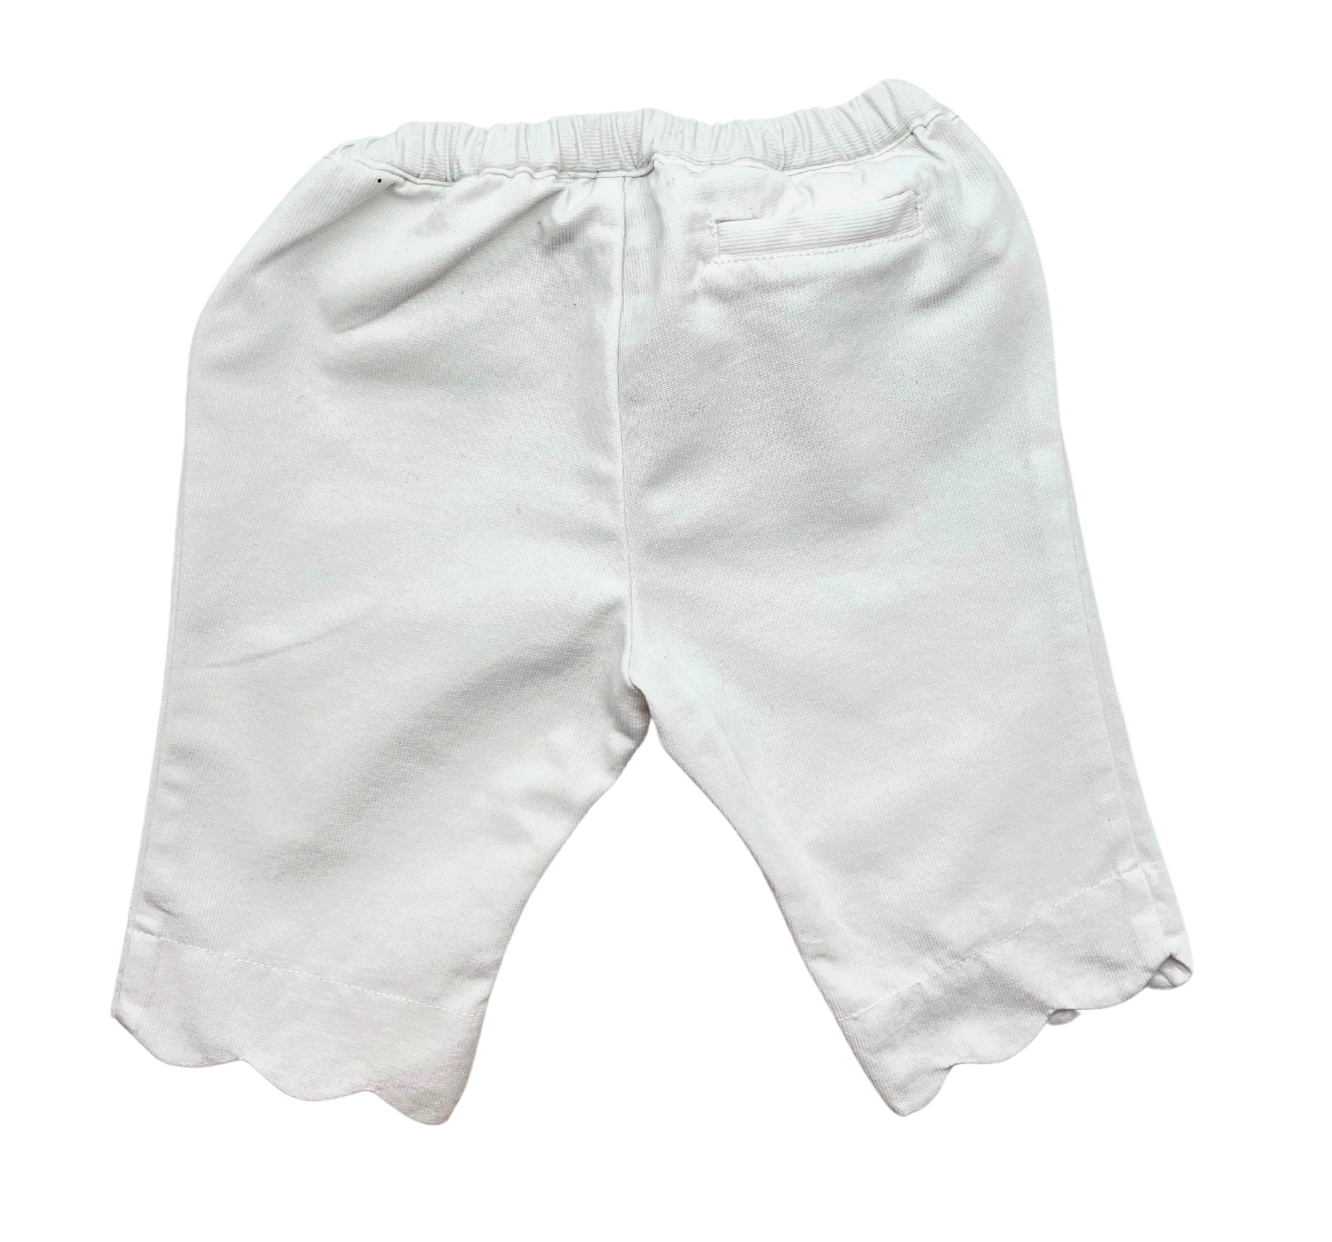 JACADI - White pants - 1 year old